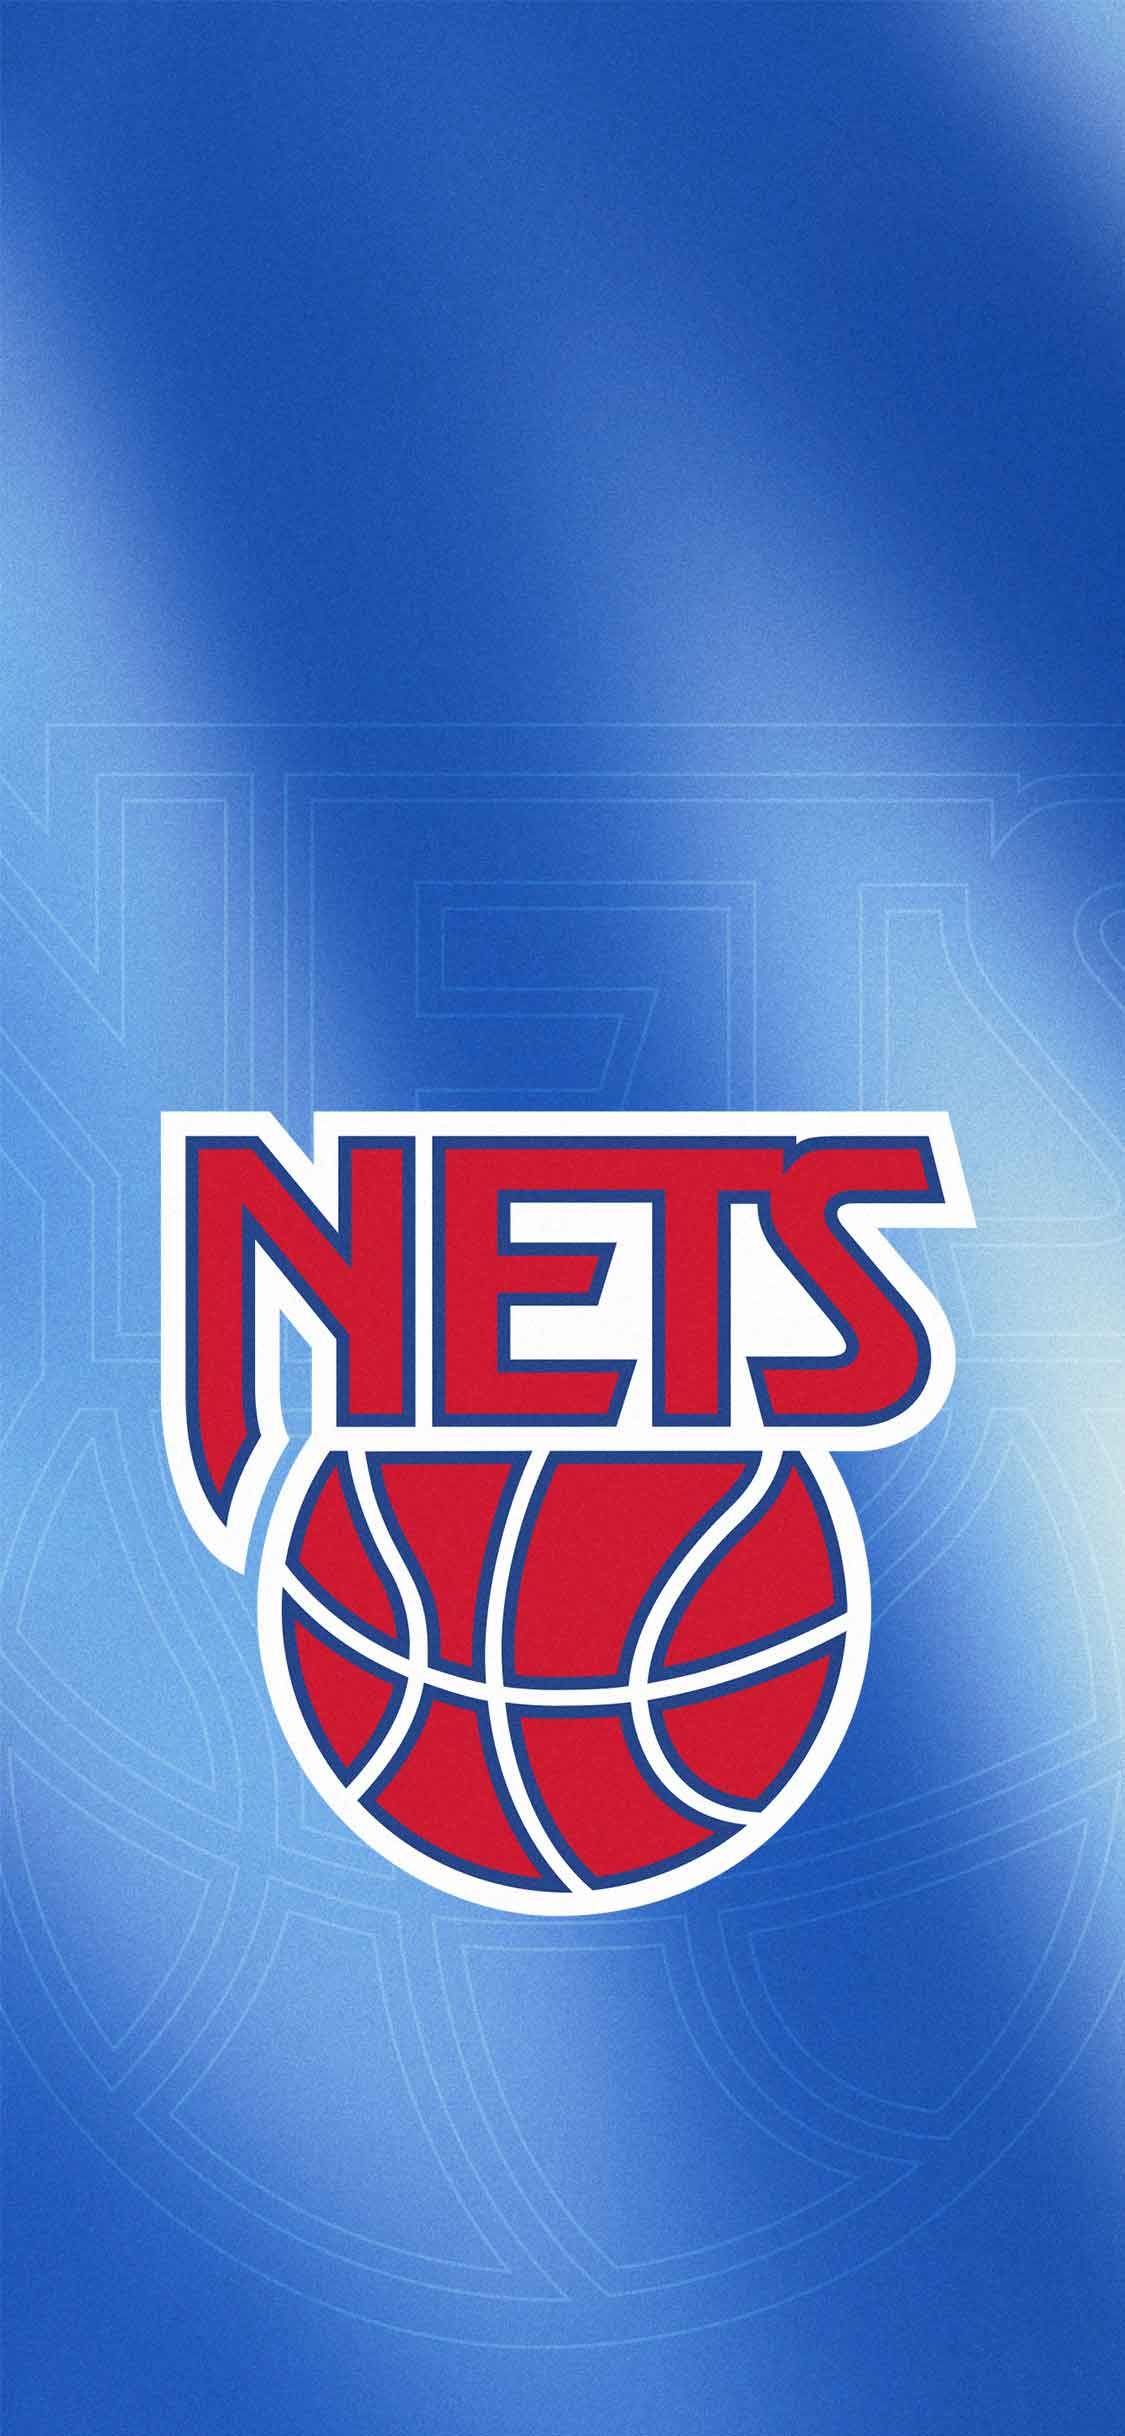 Brooklyn Nets. Brooklyn nets, Net